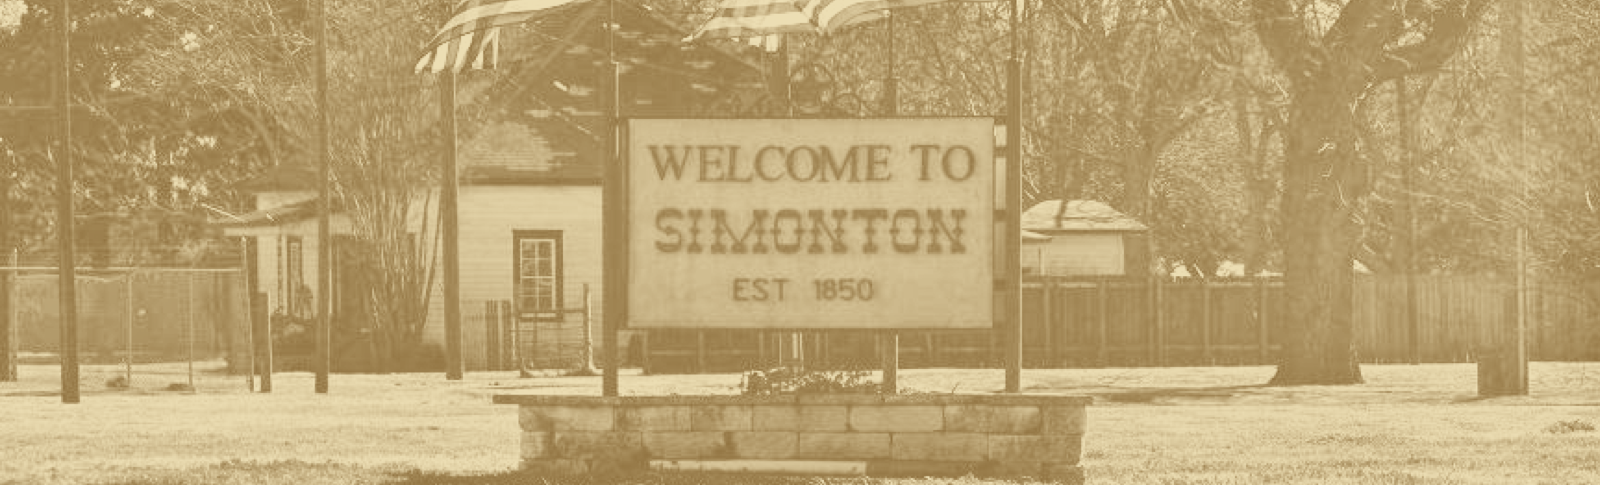 Welcome to Simonton sign